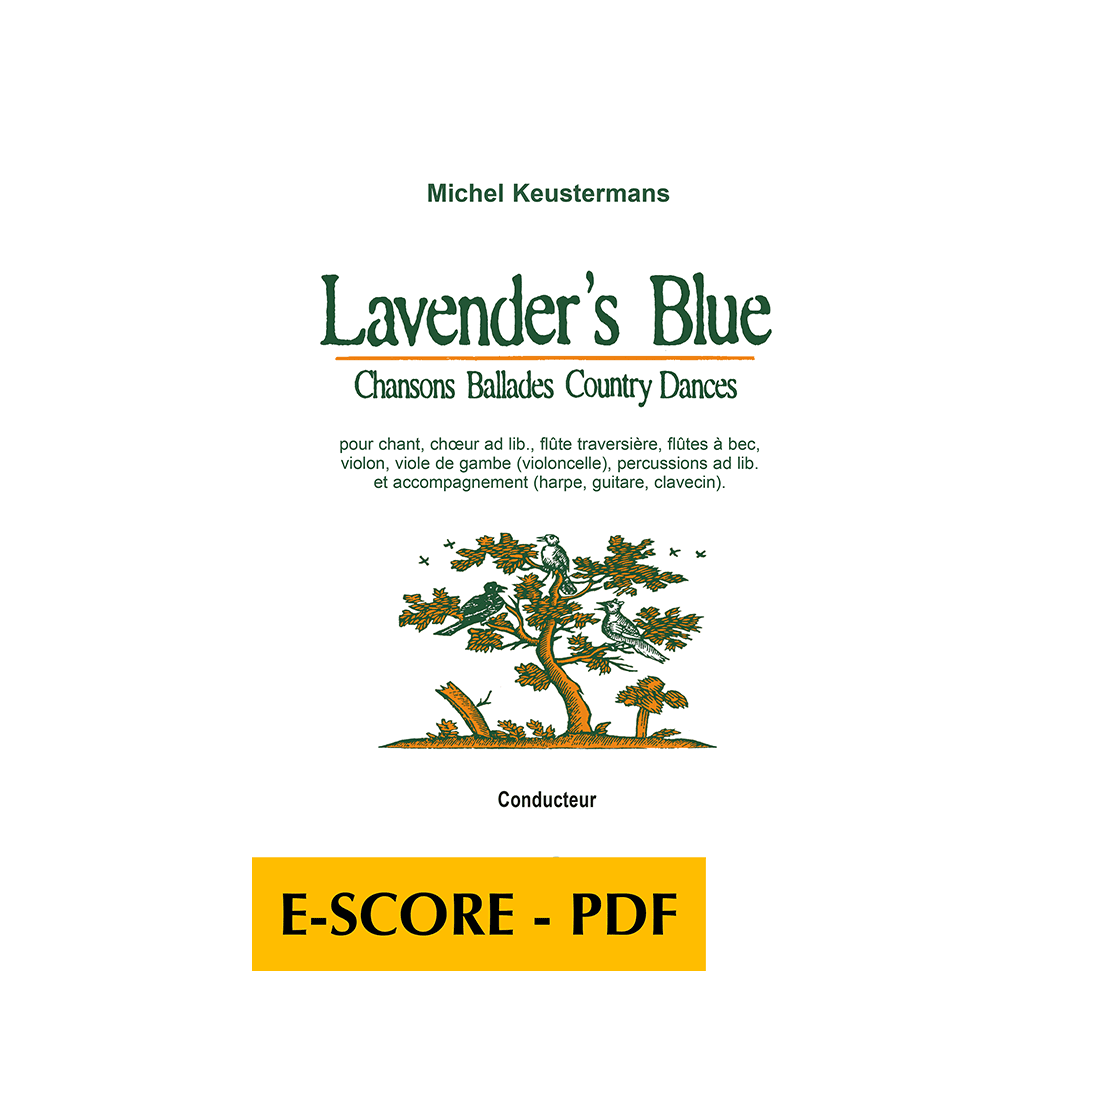 Lavender's Blue - 12 ballades, chansons et country dances (FULL SCORE) - E-score PDF